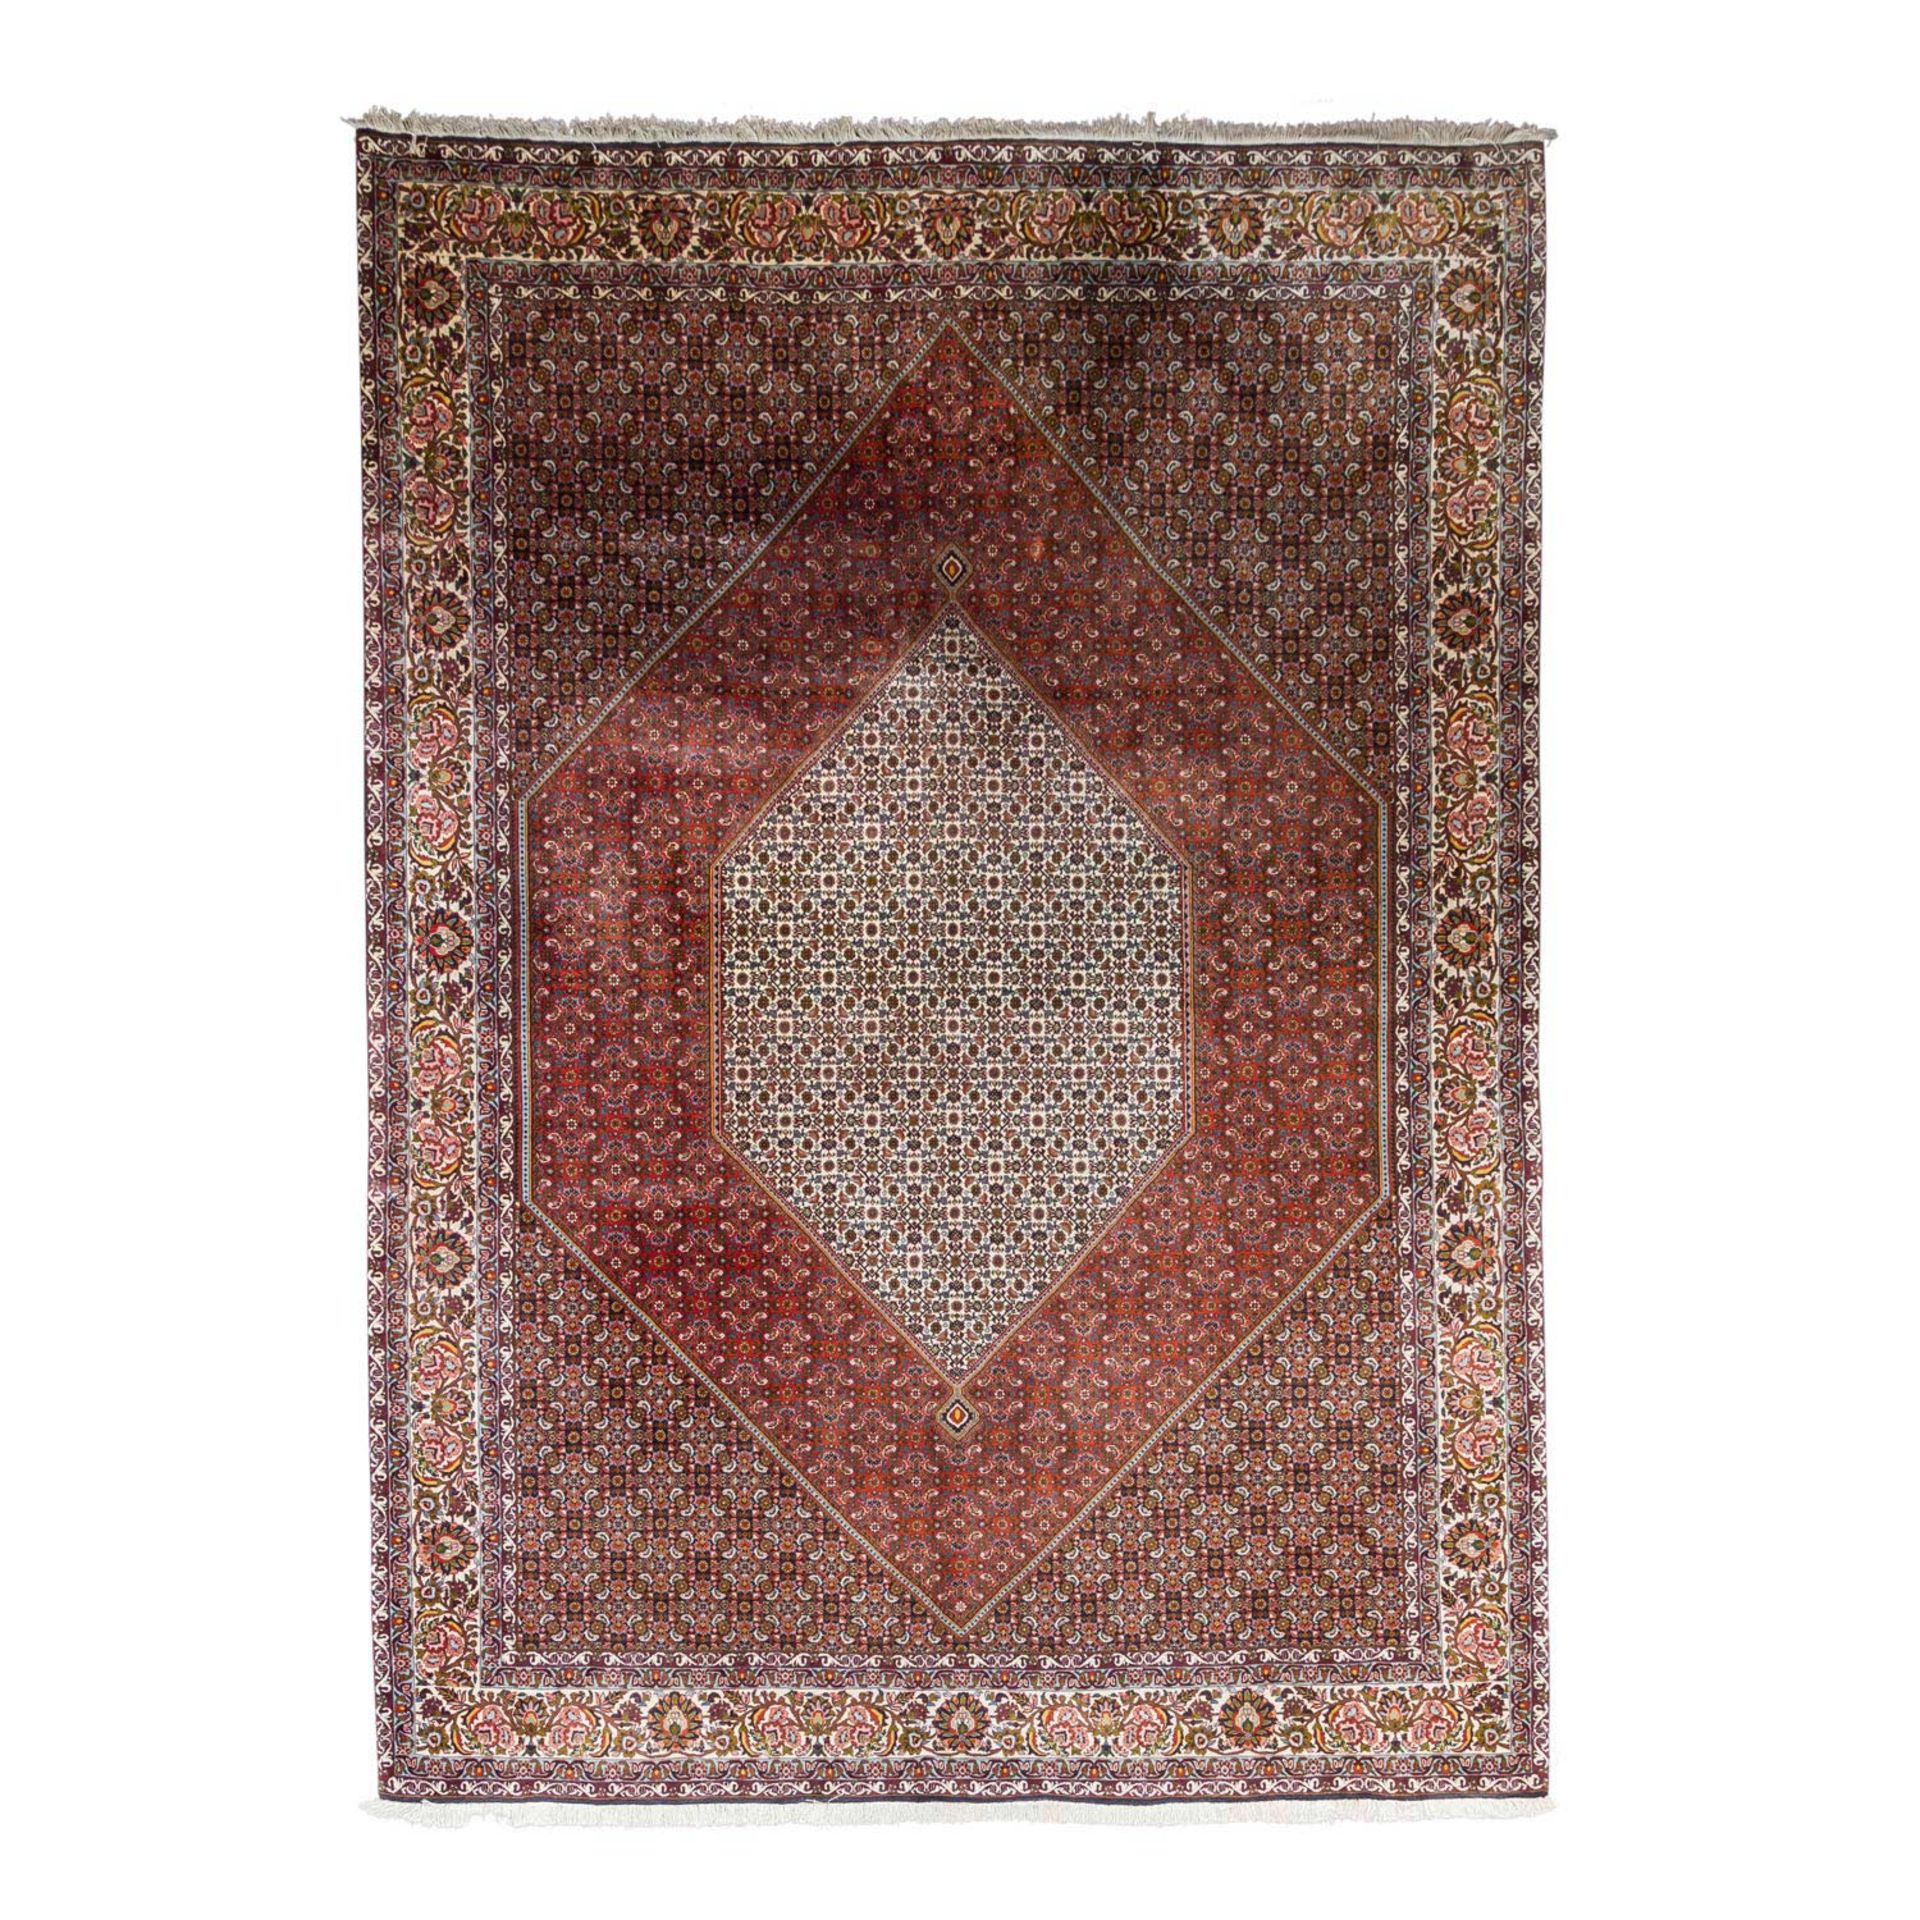 Orientteppich. BIDJAR/IRAN, 355x255 cm.Im Zentrum dominiert ein rotes Hexagon mit elfenbeinweissem